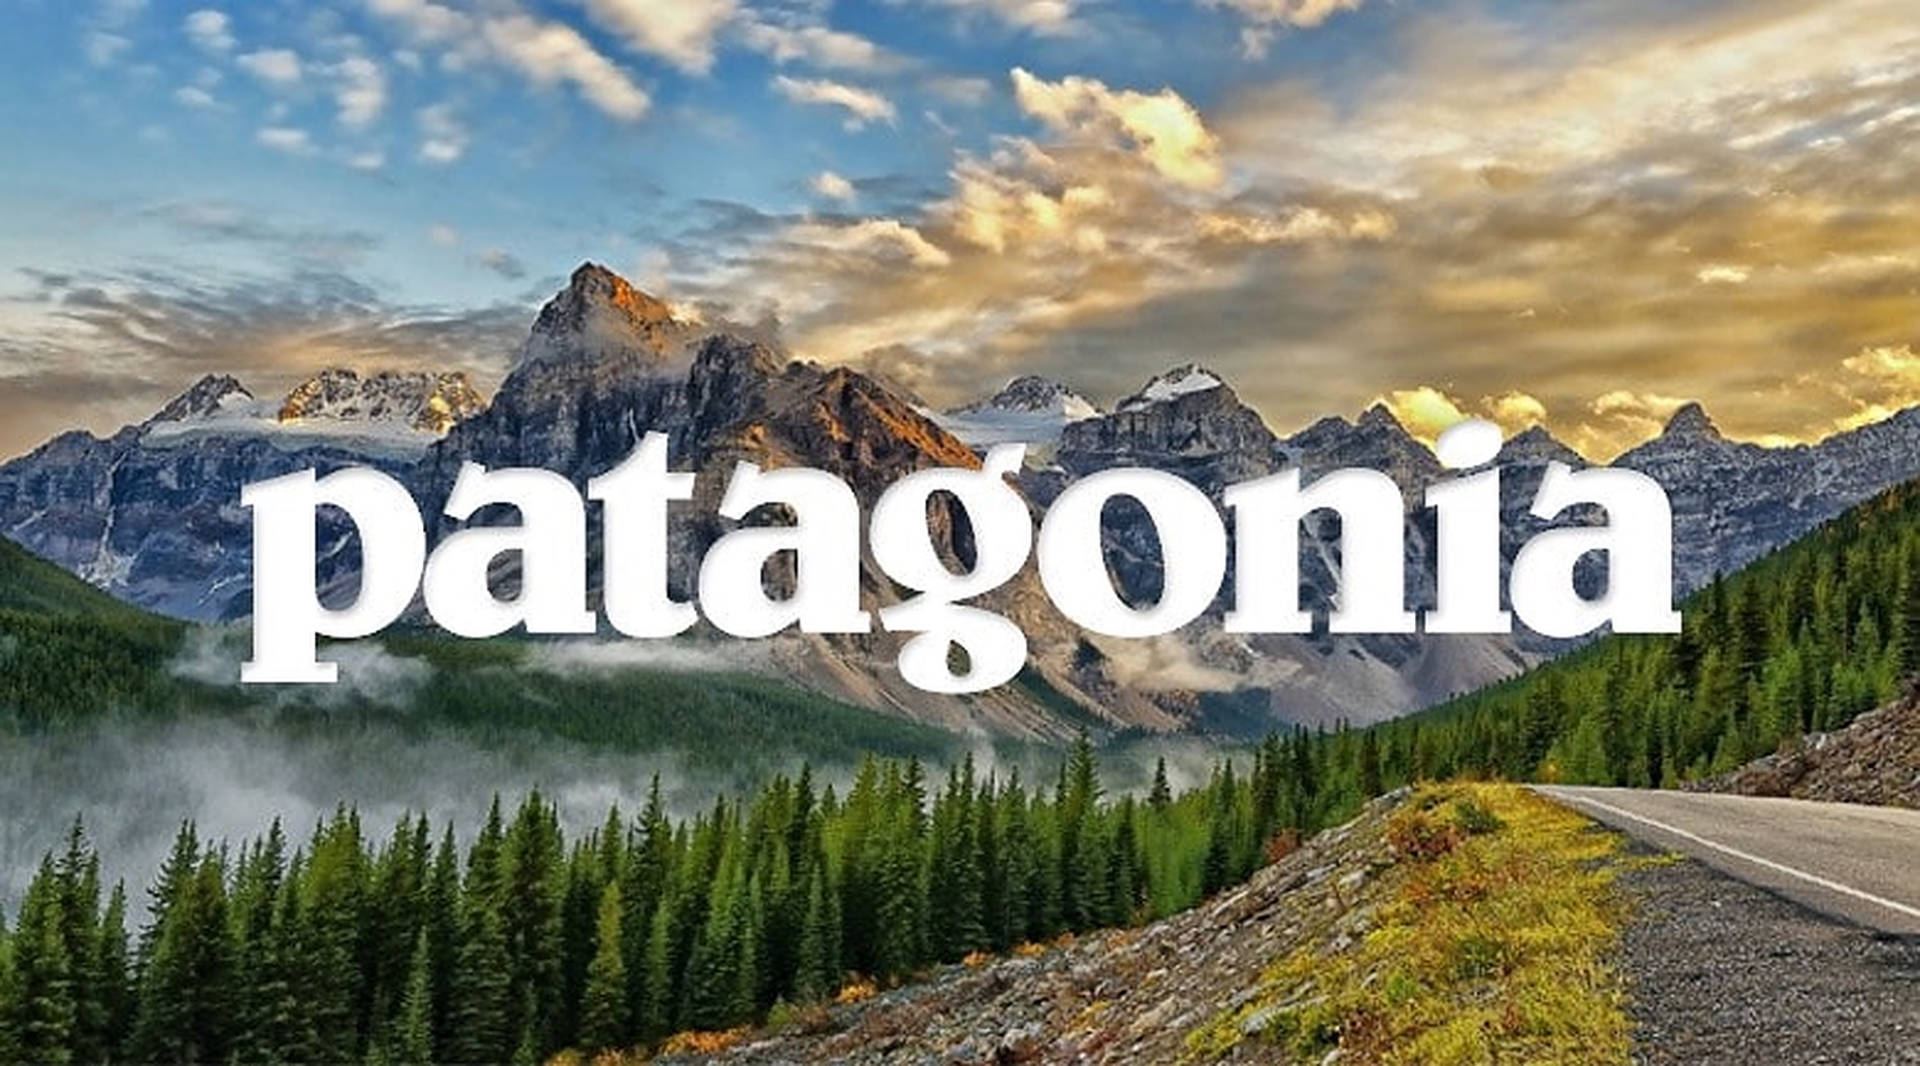 [100+] Patagonia logo hintergrund | Wallpapers.com